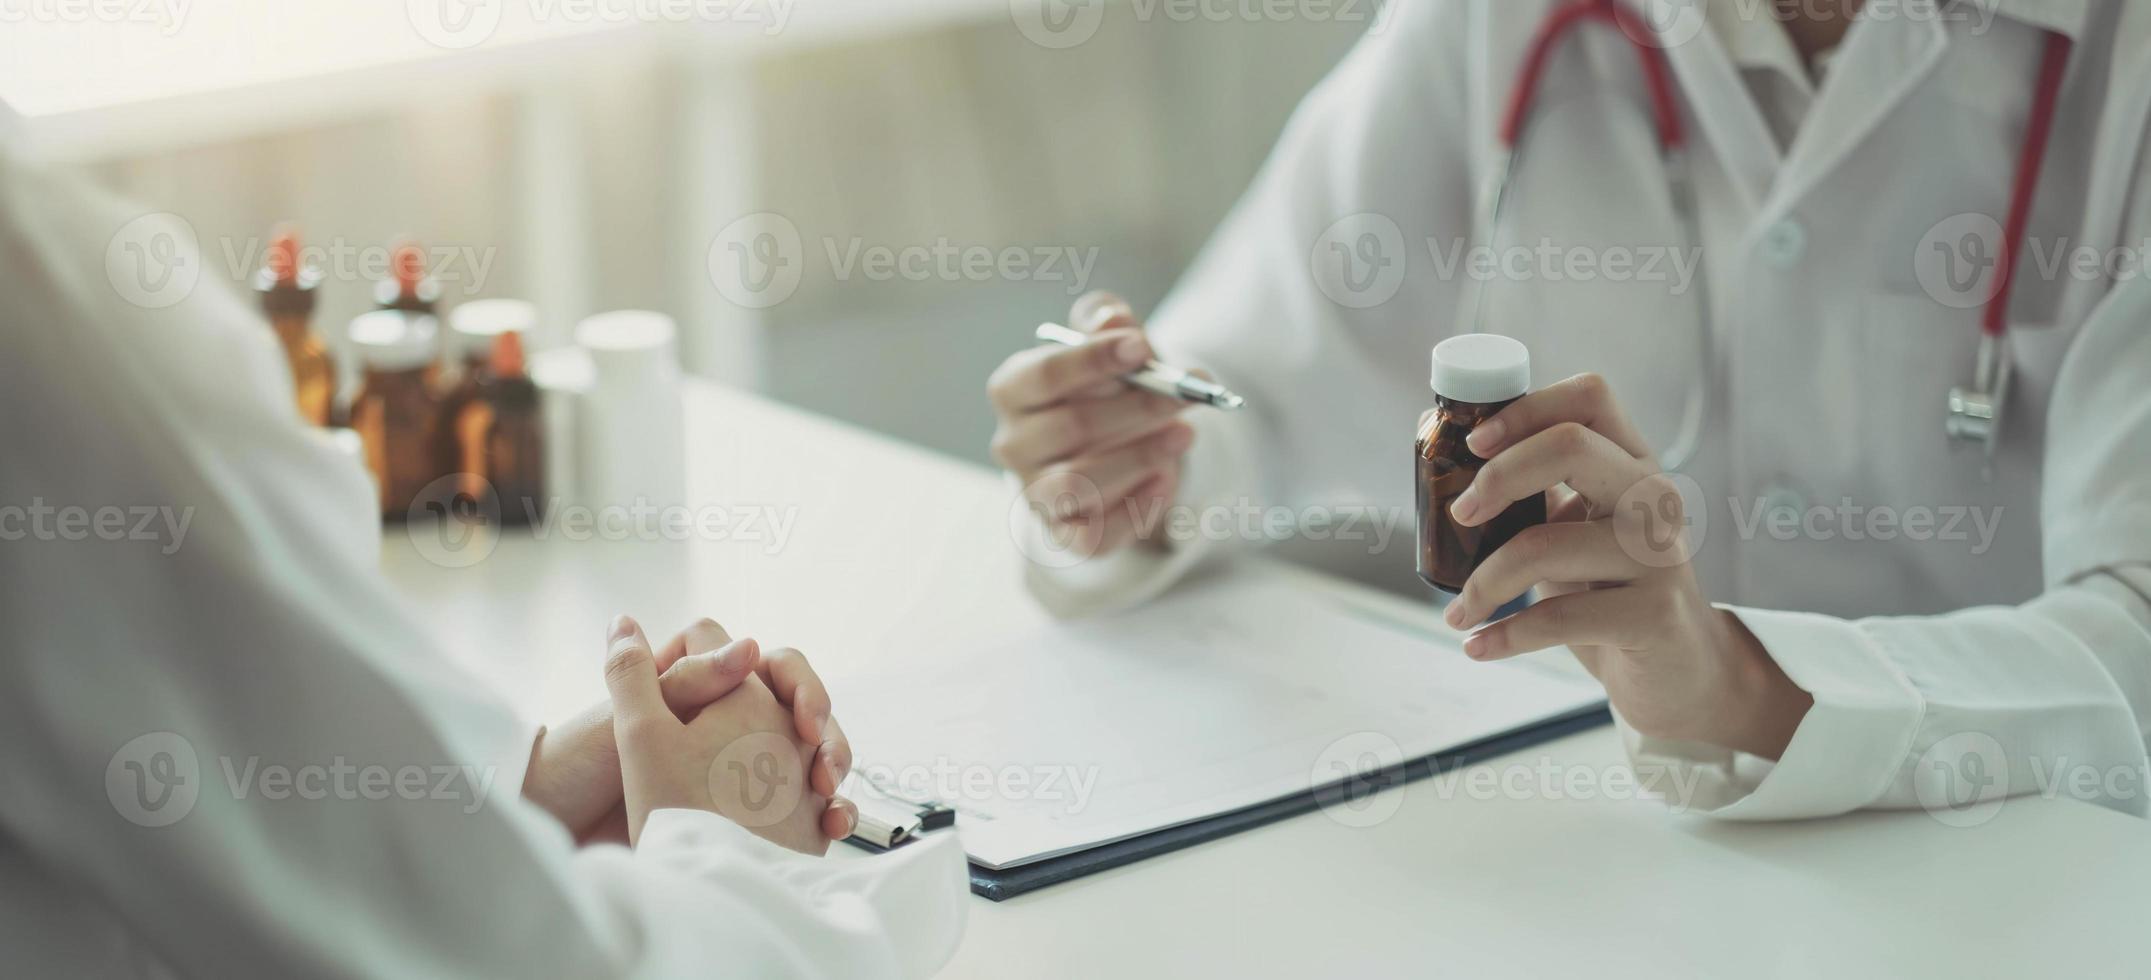 Selbstbewusster Mann und Frau, die eine Tablettenflasche halten, während sie mit dem Patienten sprechen und die Medizin im Büro überprüfen. foto